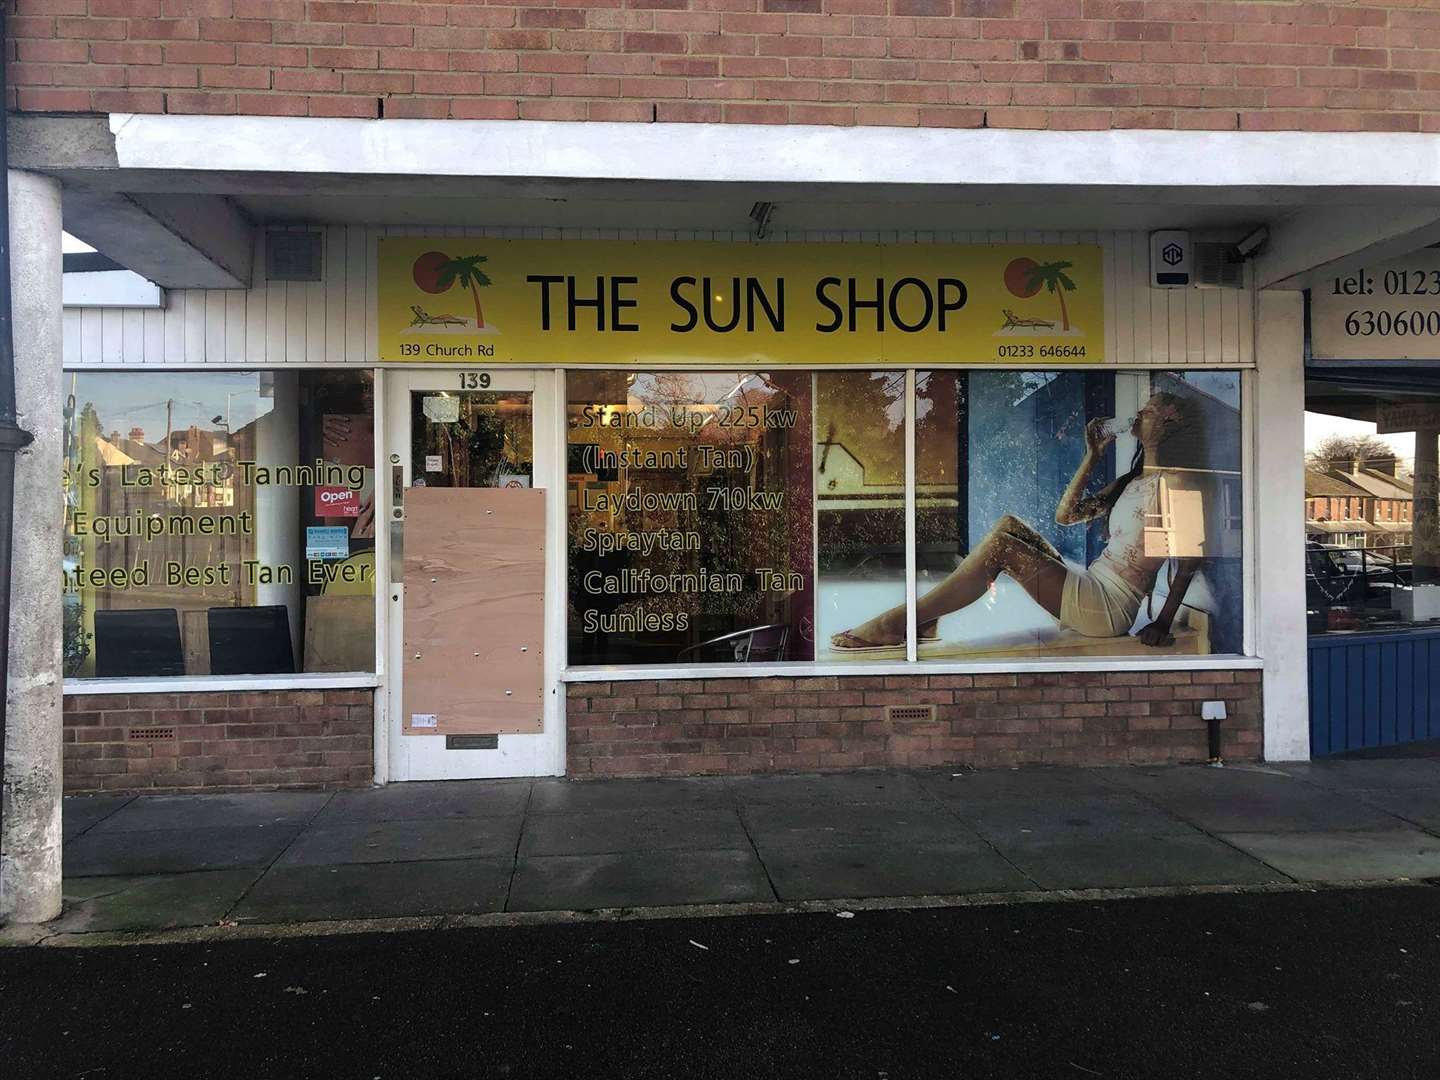 The Sun Shop (5714631)